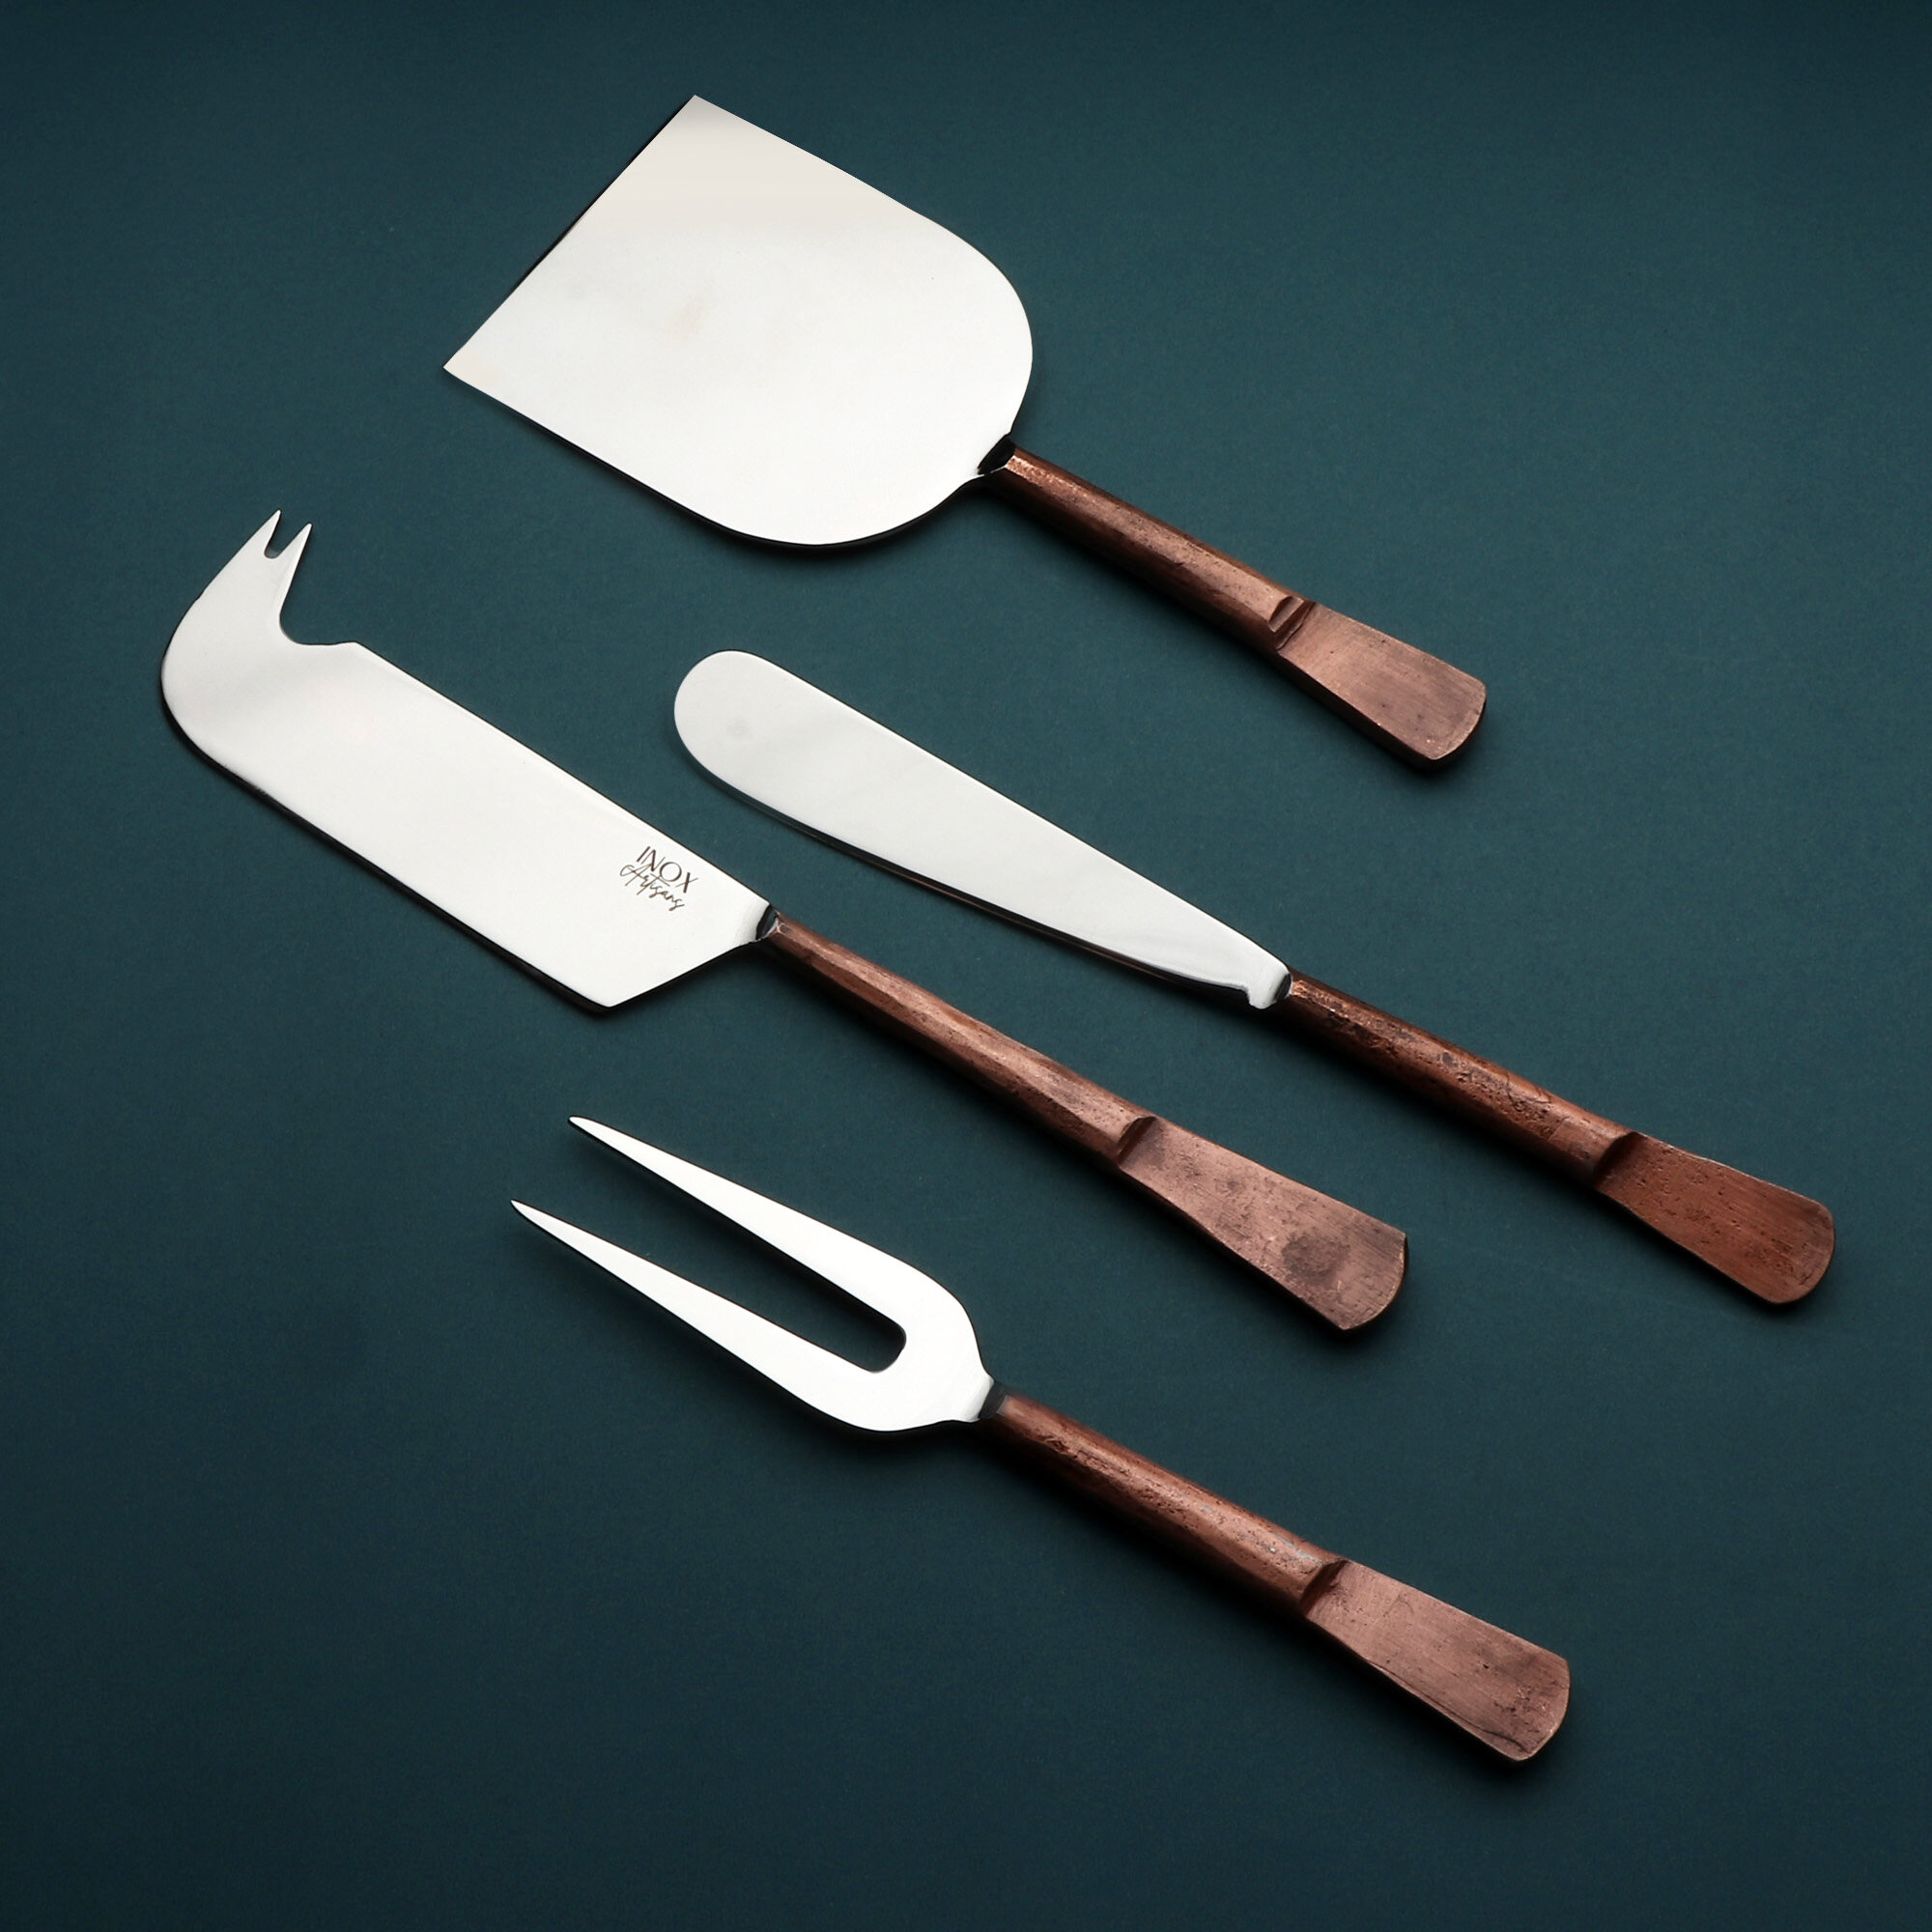 Sundance Design Copper Antique Butter Knife/Spreader 4 PCS. Set